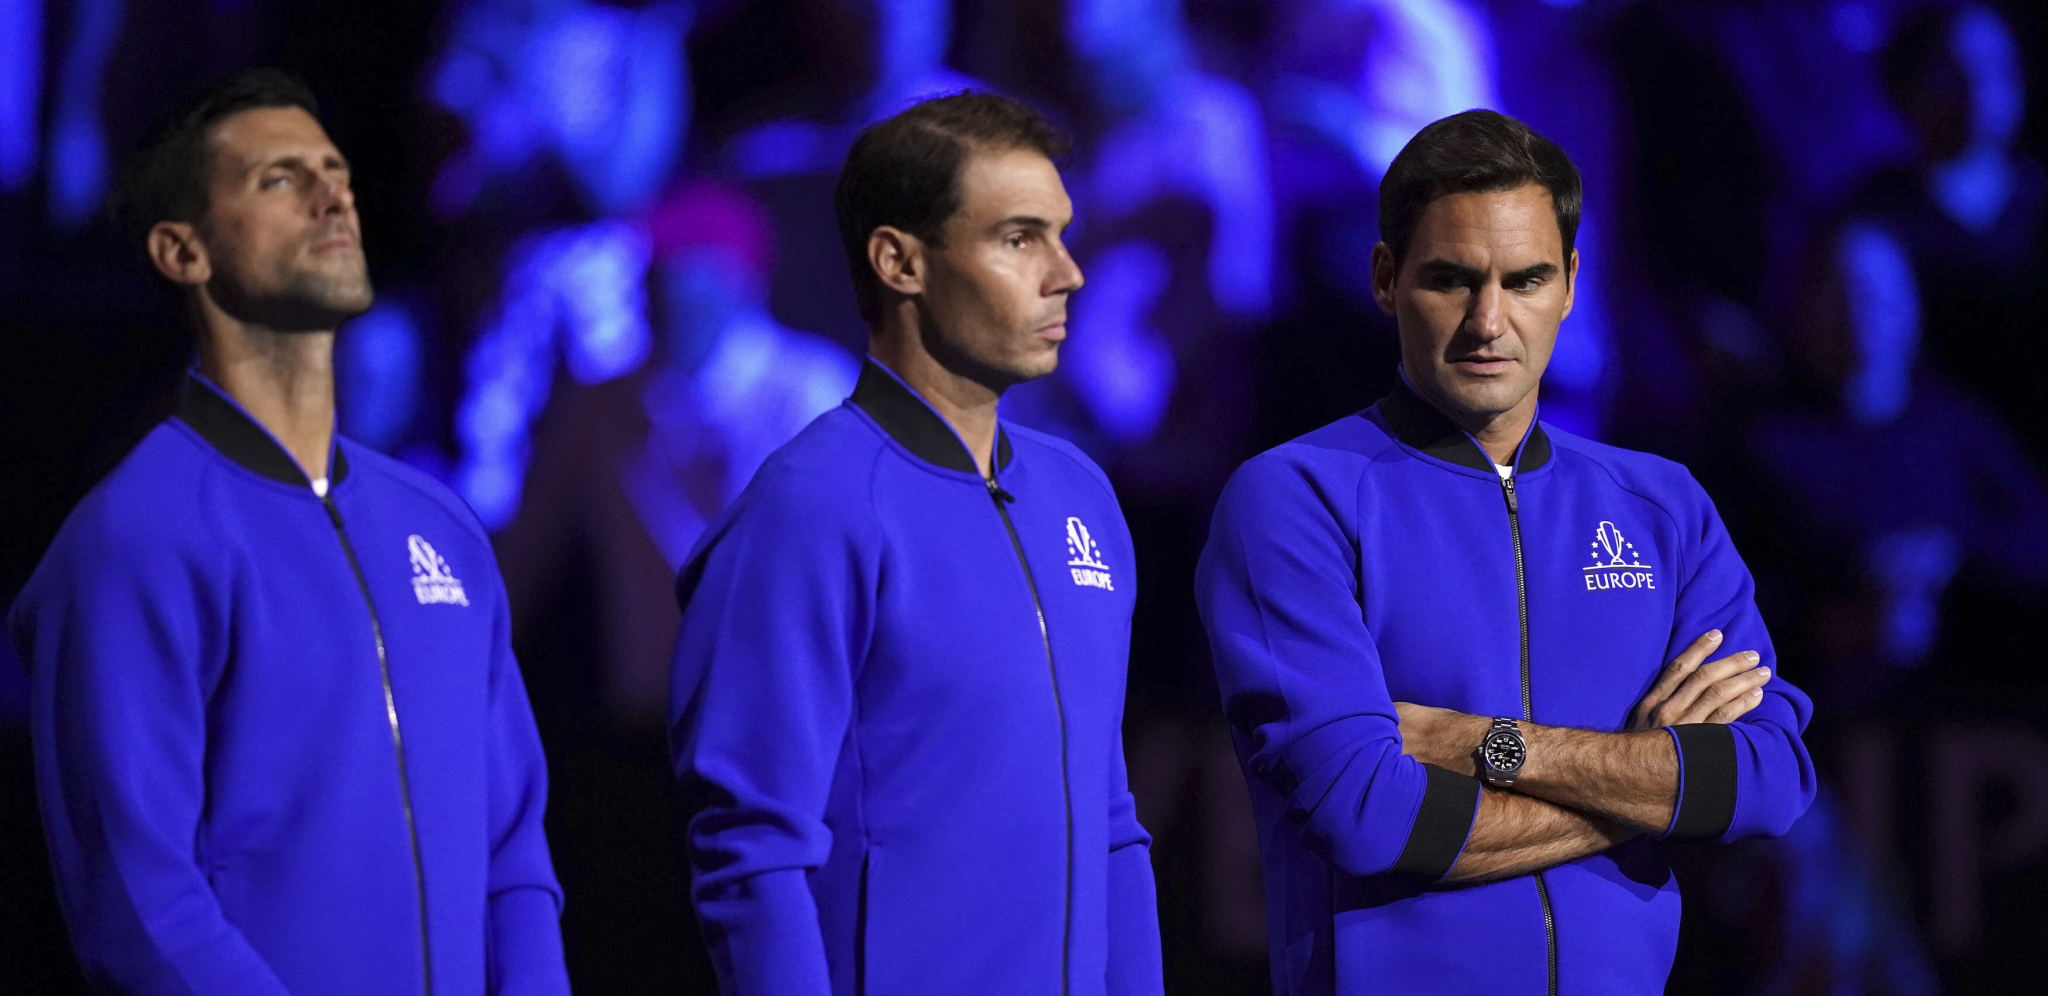 TENIS JE DOŽIVEO VELIKU PROMENU Nekada su se Đoković, Federer i Nadal pitali za sve, a sada...